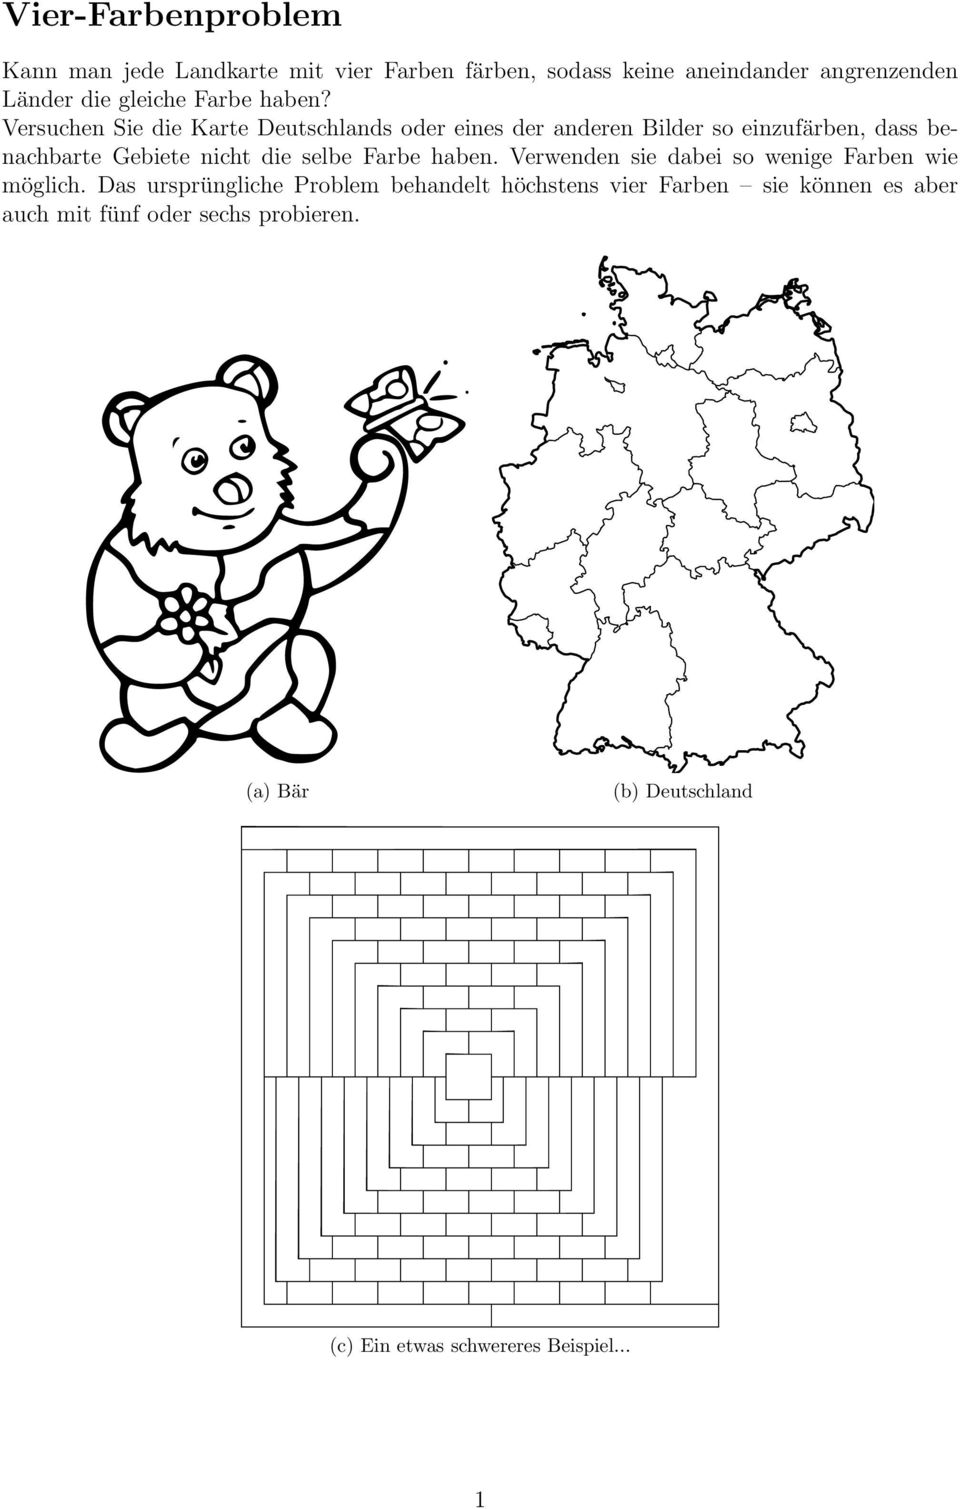 Versuchen Sie die Karte Deutschlands oder eines der anderen Bilder so einzufärben, dass benachbarte Gebiete nicht die selbe